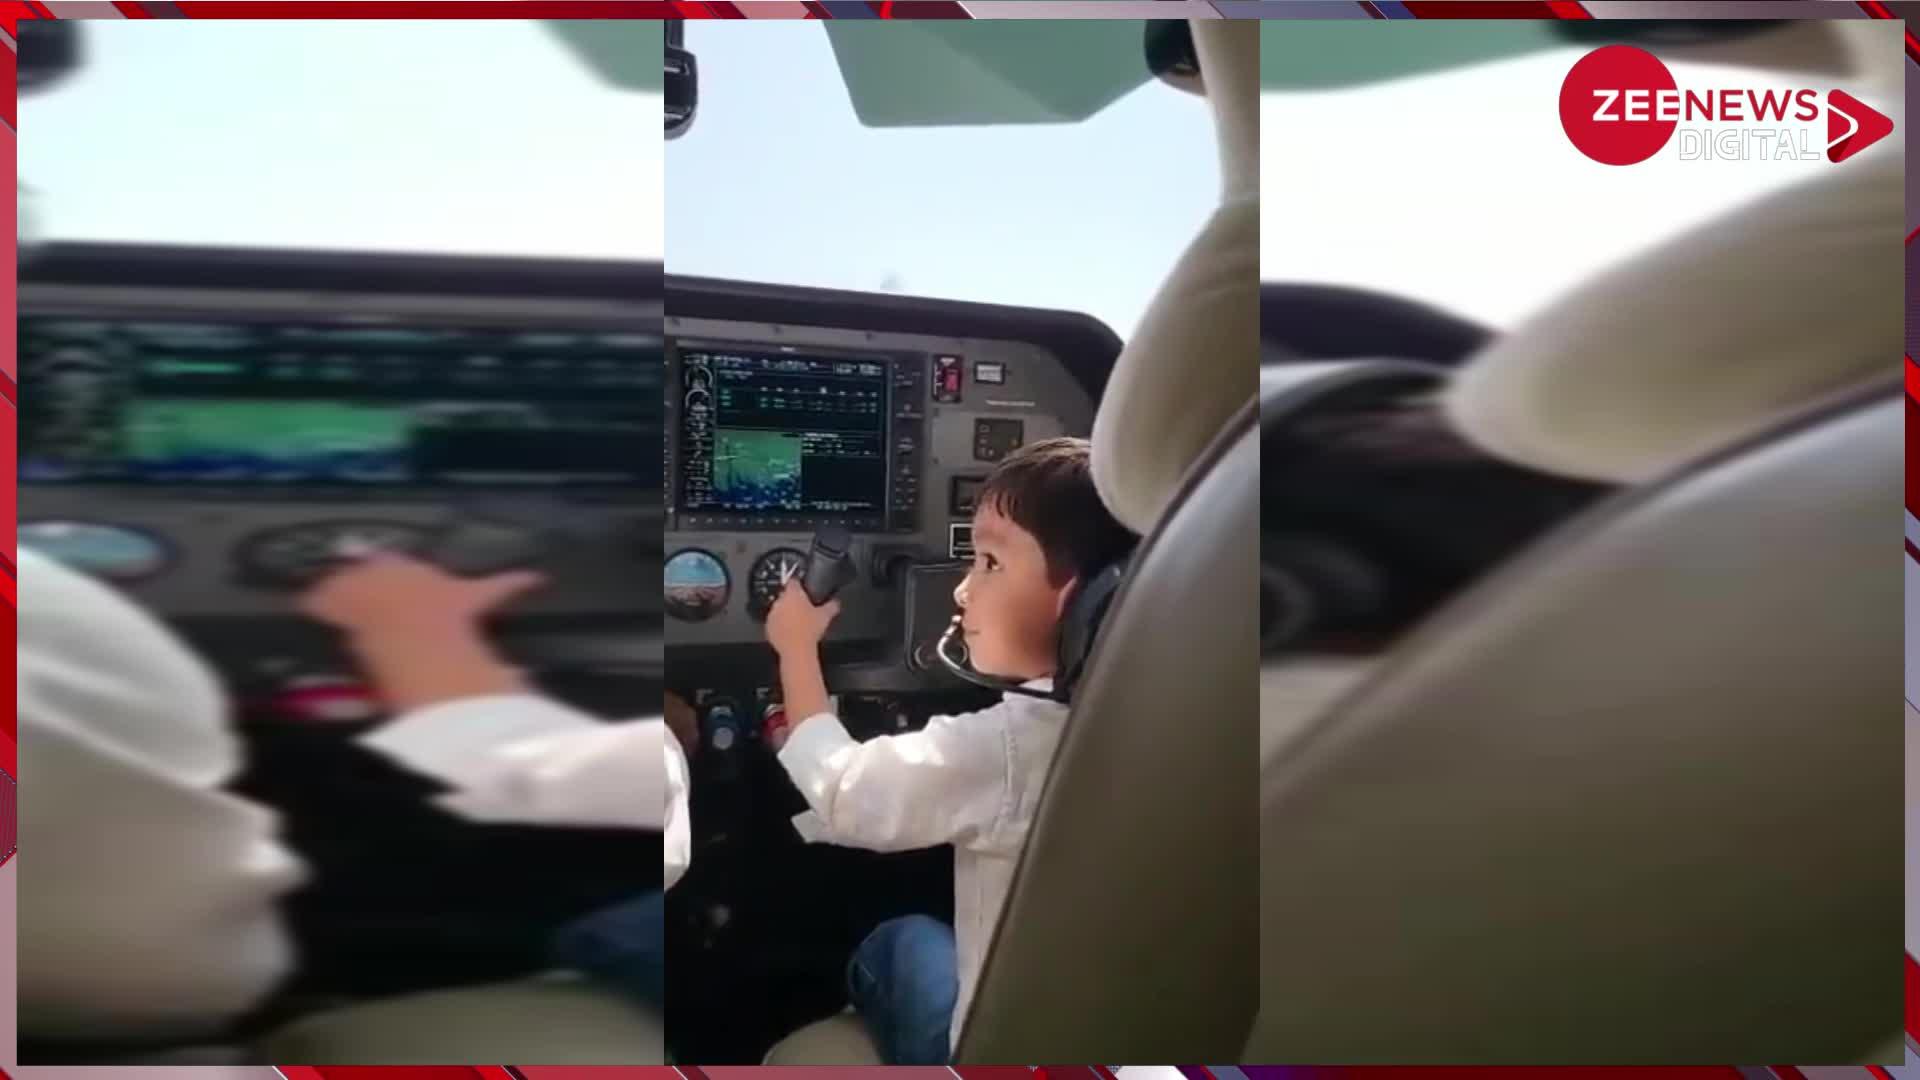 चलते विमान में पायलट की सीट पर बैठे विमान उड़ाता नजर आया बच्चा, वायरल वीडियो से सूरत एयरपोर्ट पर मच गया हड़कंप